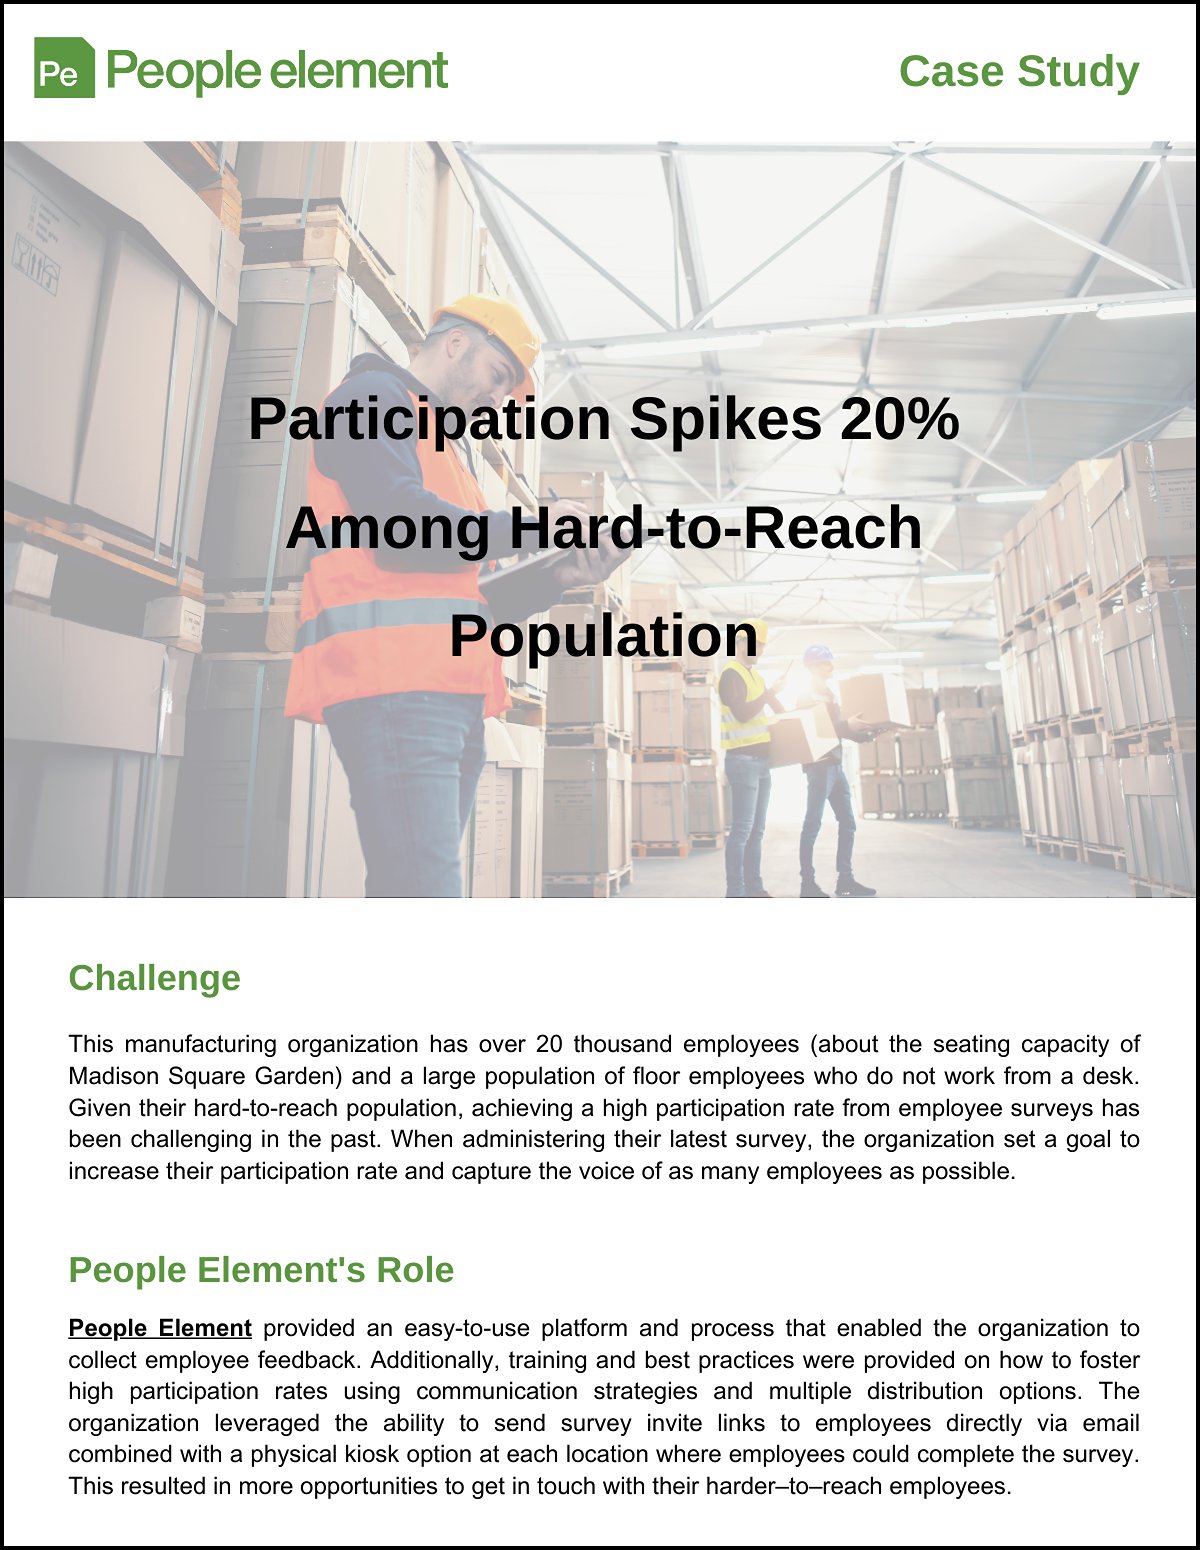 Case Study - Survey Participation Spikes 20%